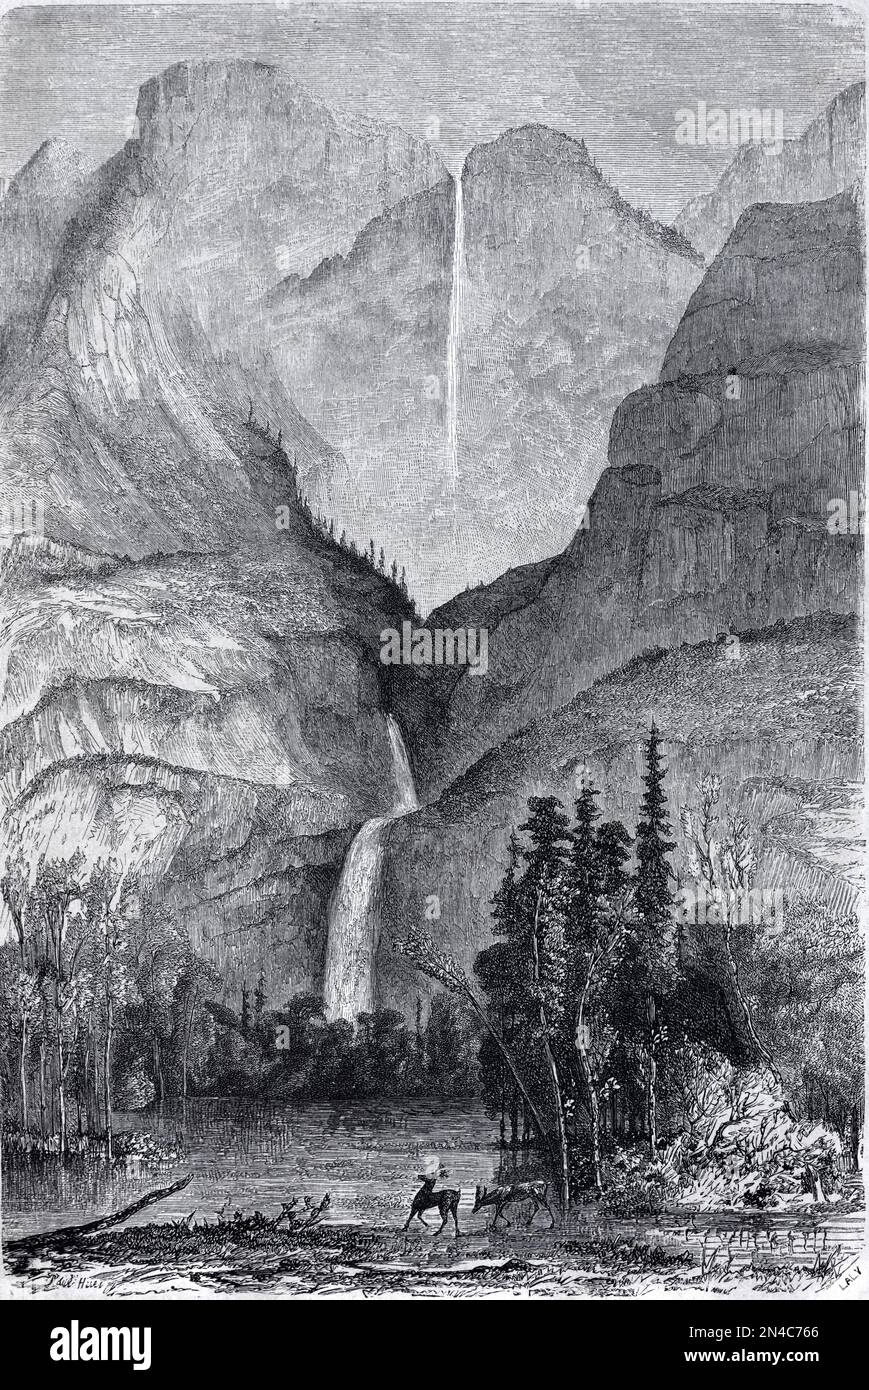 Yosemite-Wasserfall, Wasserfälle oder Wasserfälle Yosemite-Nationalpark Kalifornien. Vintage-Gravur oder Abbildung 1862 Stockfoto